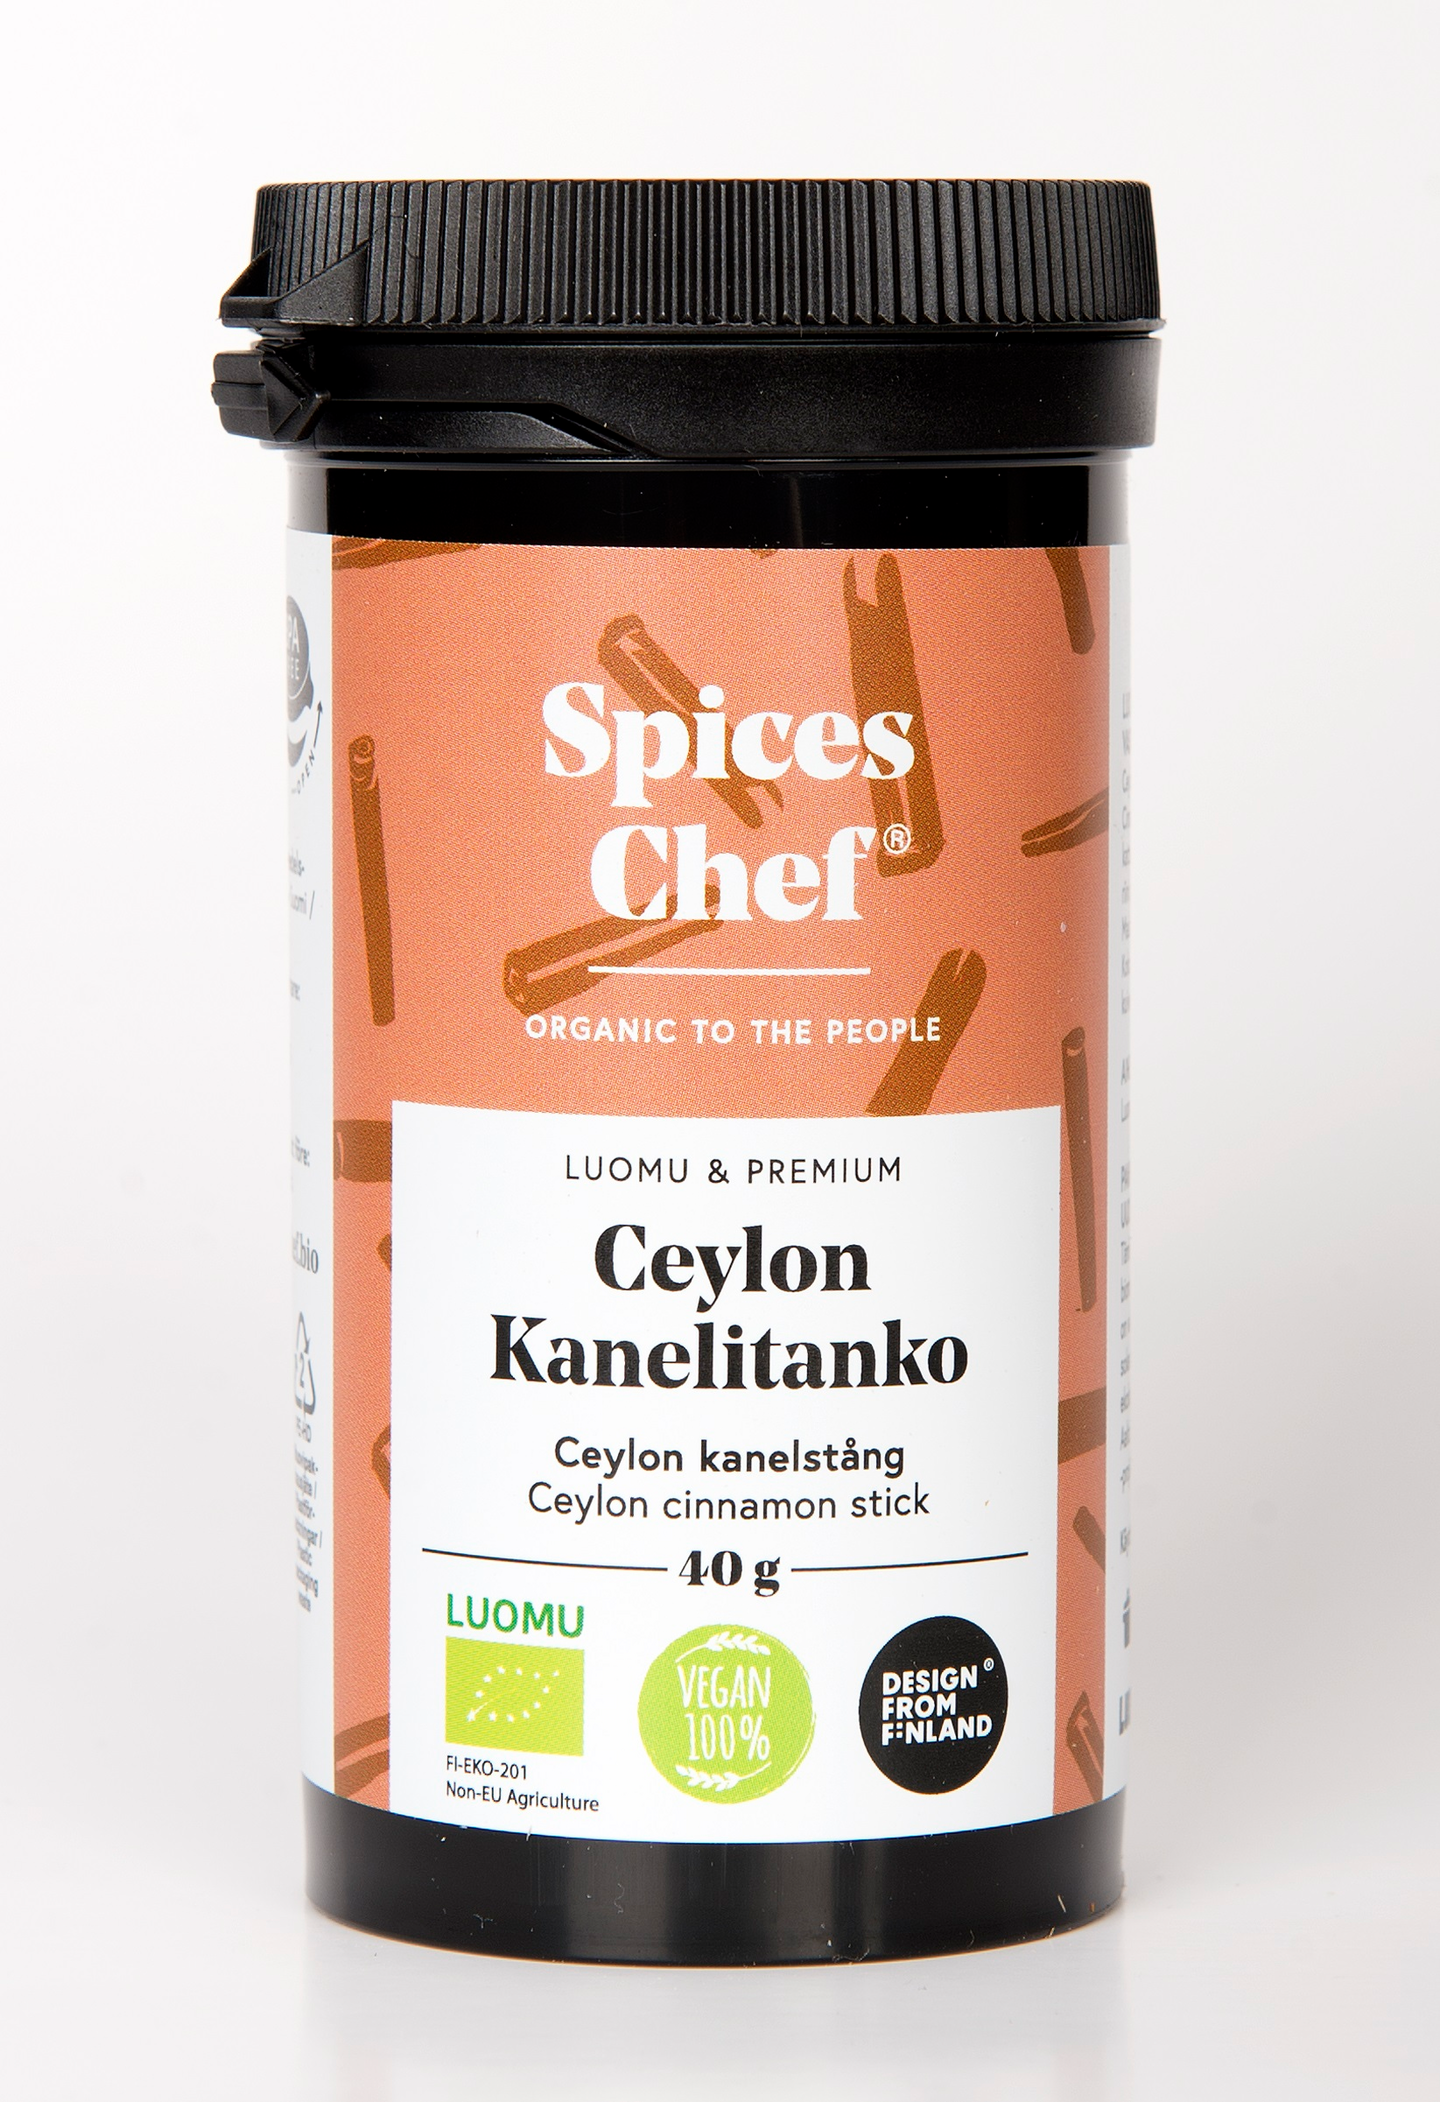 Spices Chef luomu ceylon kanelitanko 40g   BPA-vapaassa biomuovi maustepurkissa.